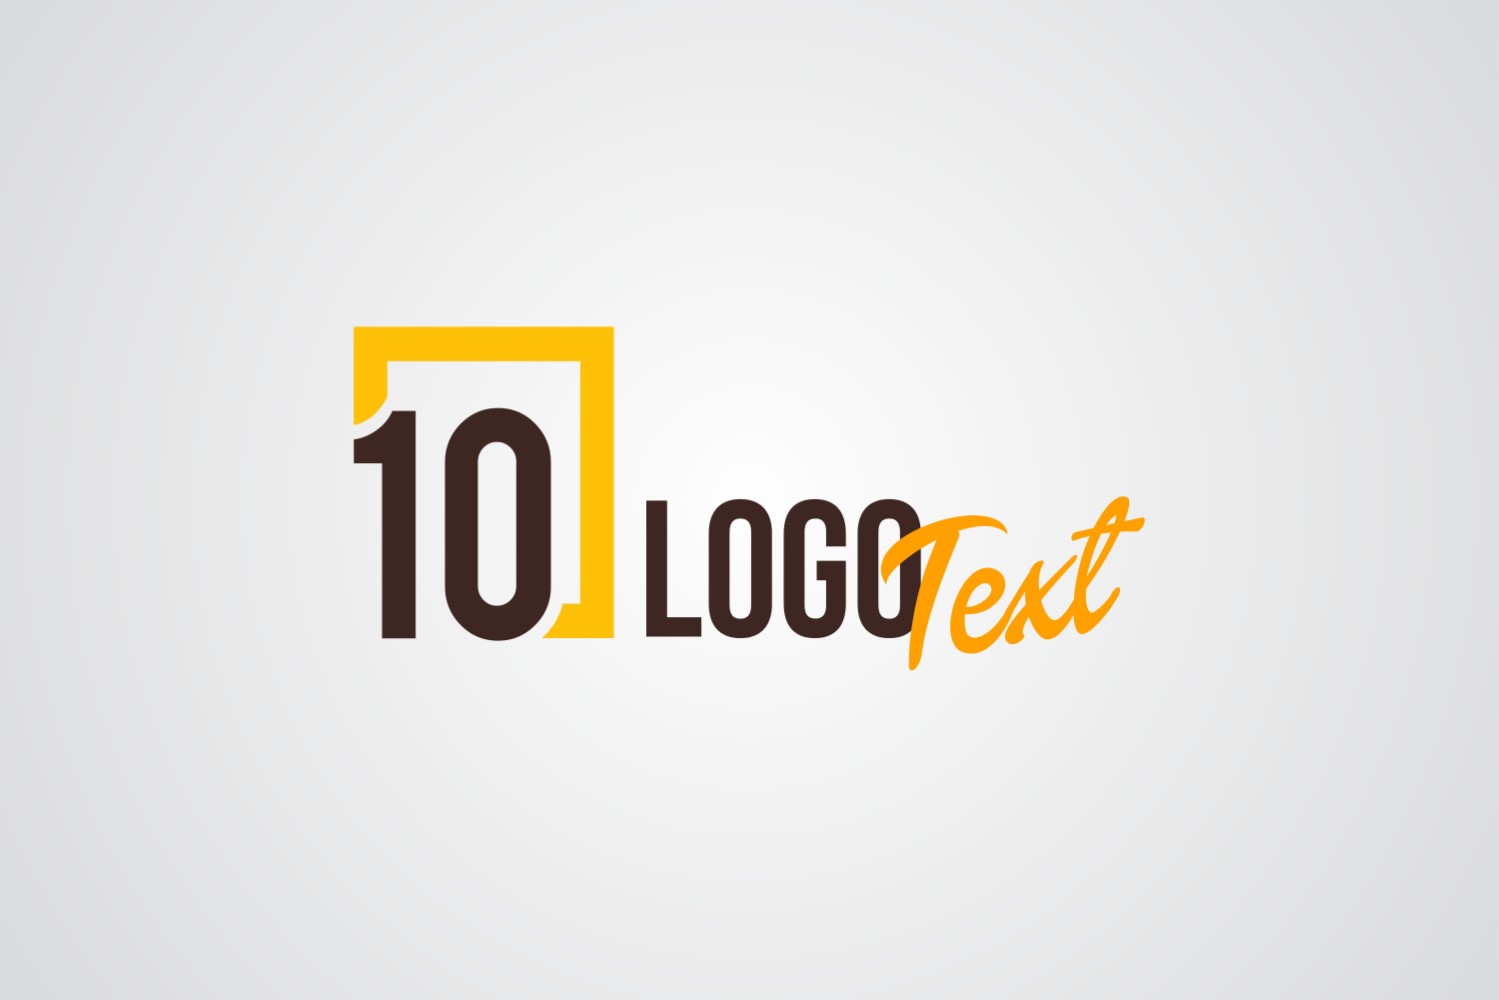 10 logo Text Logo Design Template